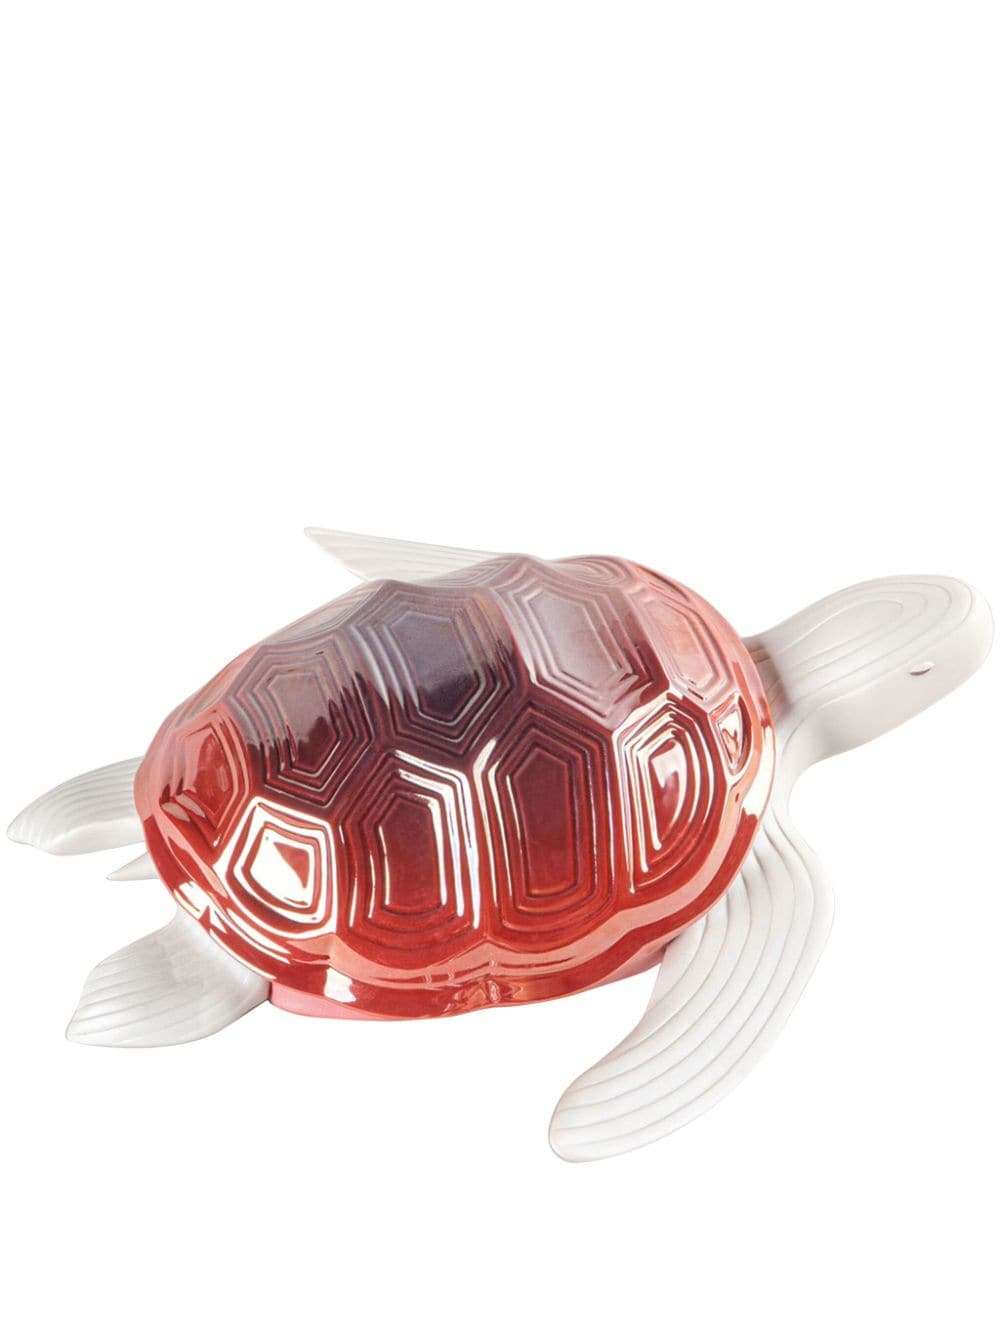 Lladró turtle porcelain figurine - Red von Lladró